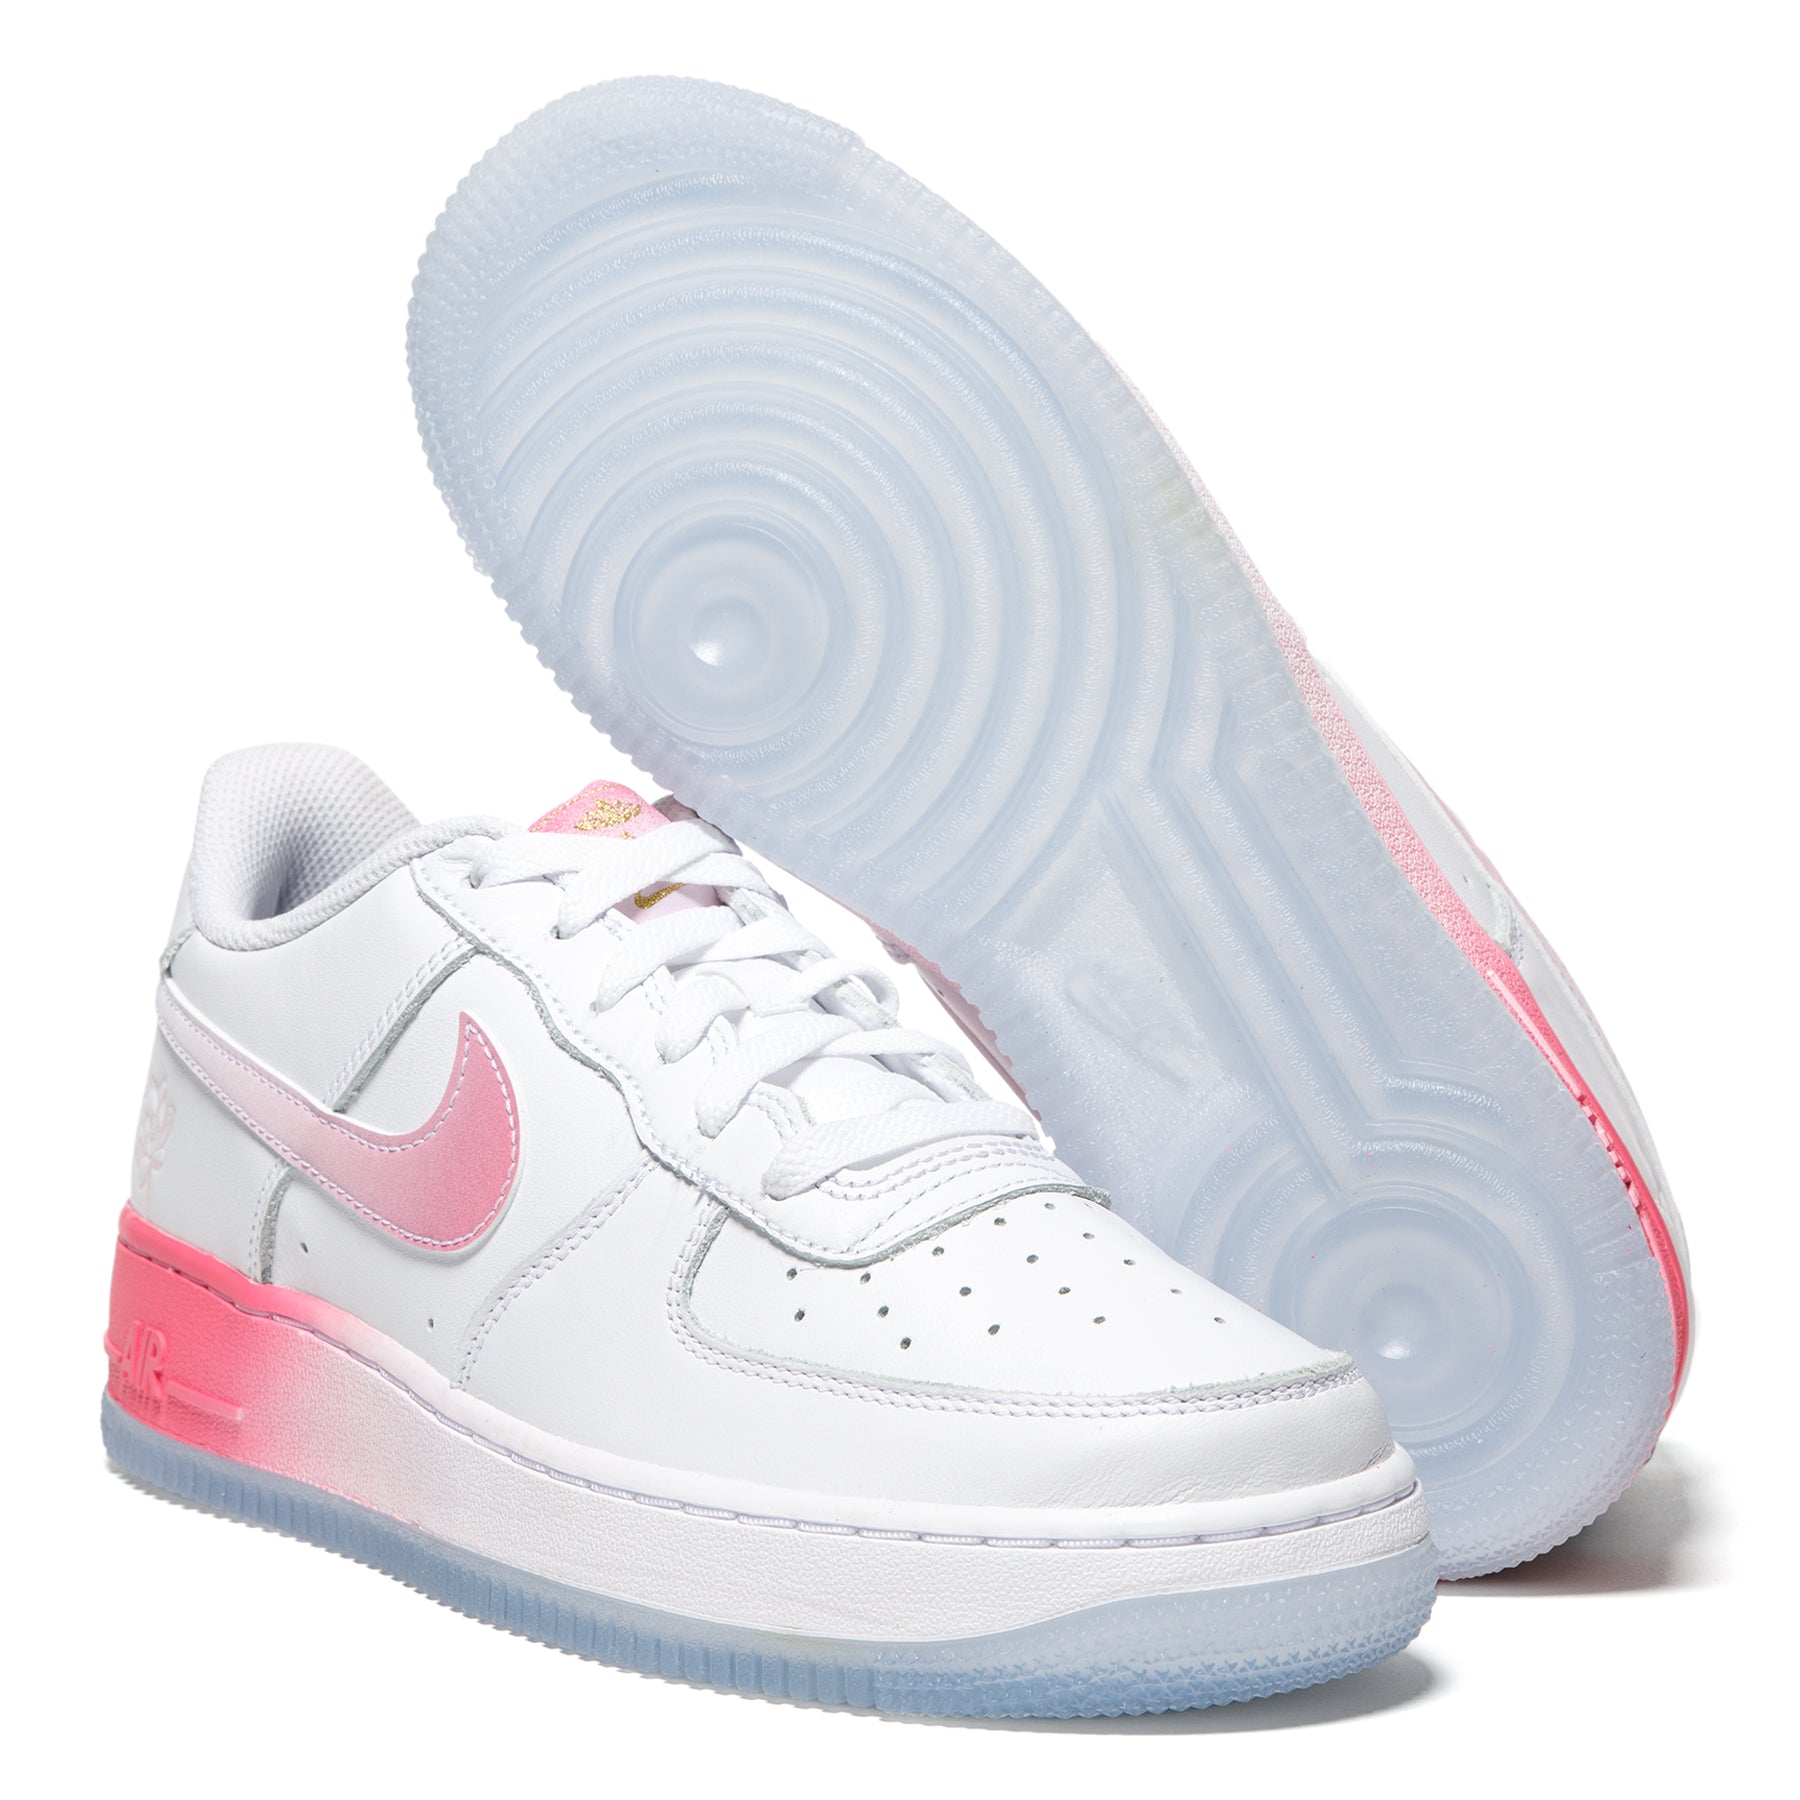 Nike Air Force 1 LV8 GS Big Kids (FD1023-100) White/Lotus Pink / 6